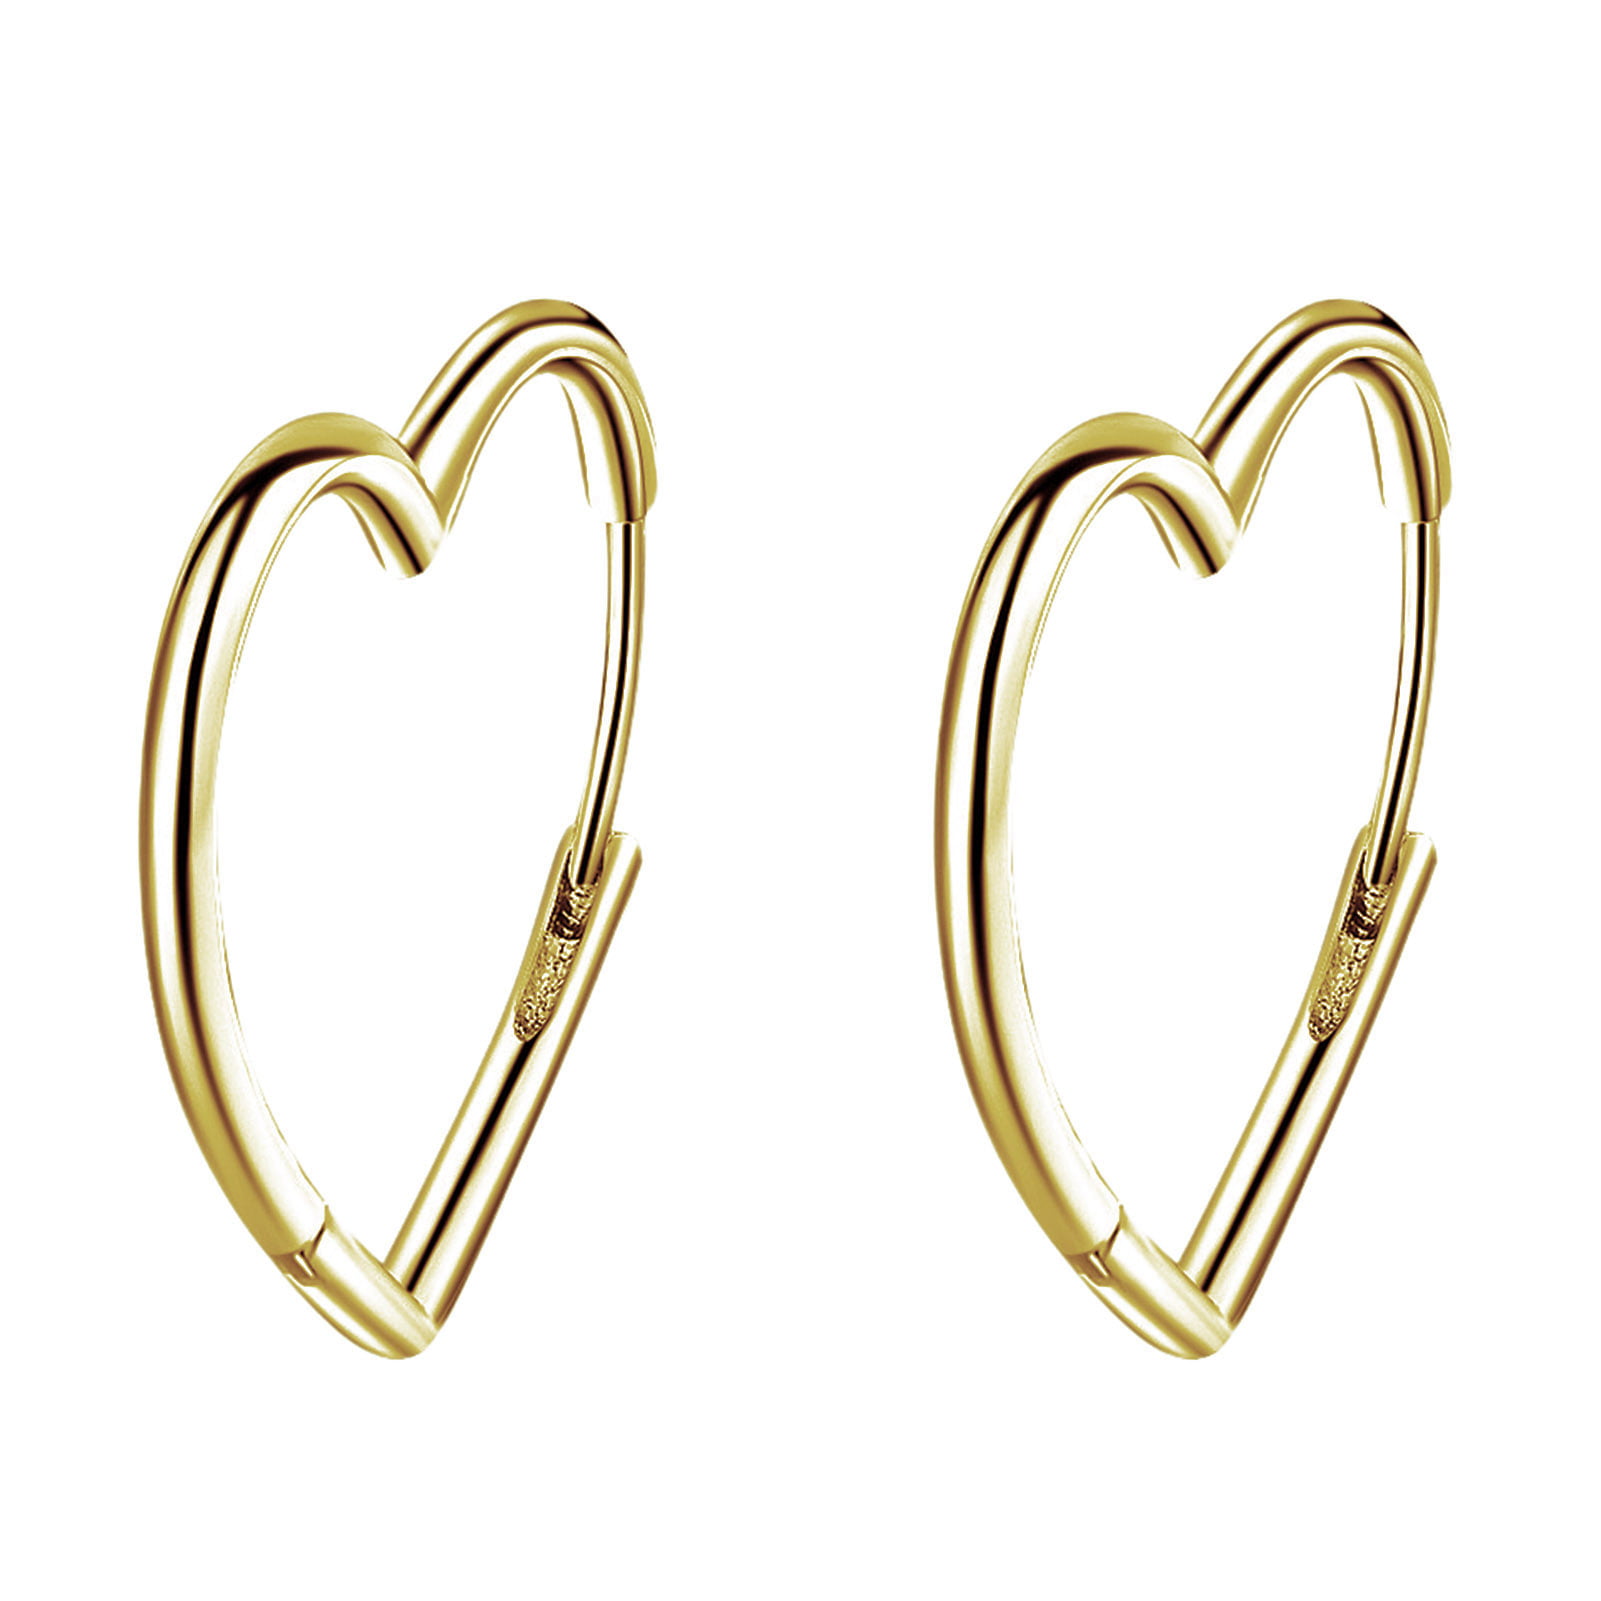 Grandest Birch Heart Love Letters Women Metal Ear Hoop Earrings Charming Jewelry Gift Copper Yellow, Adult Unisex, Size: One Size